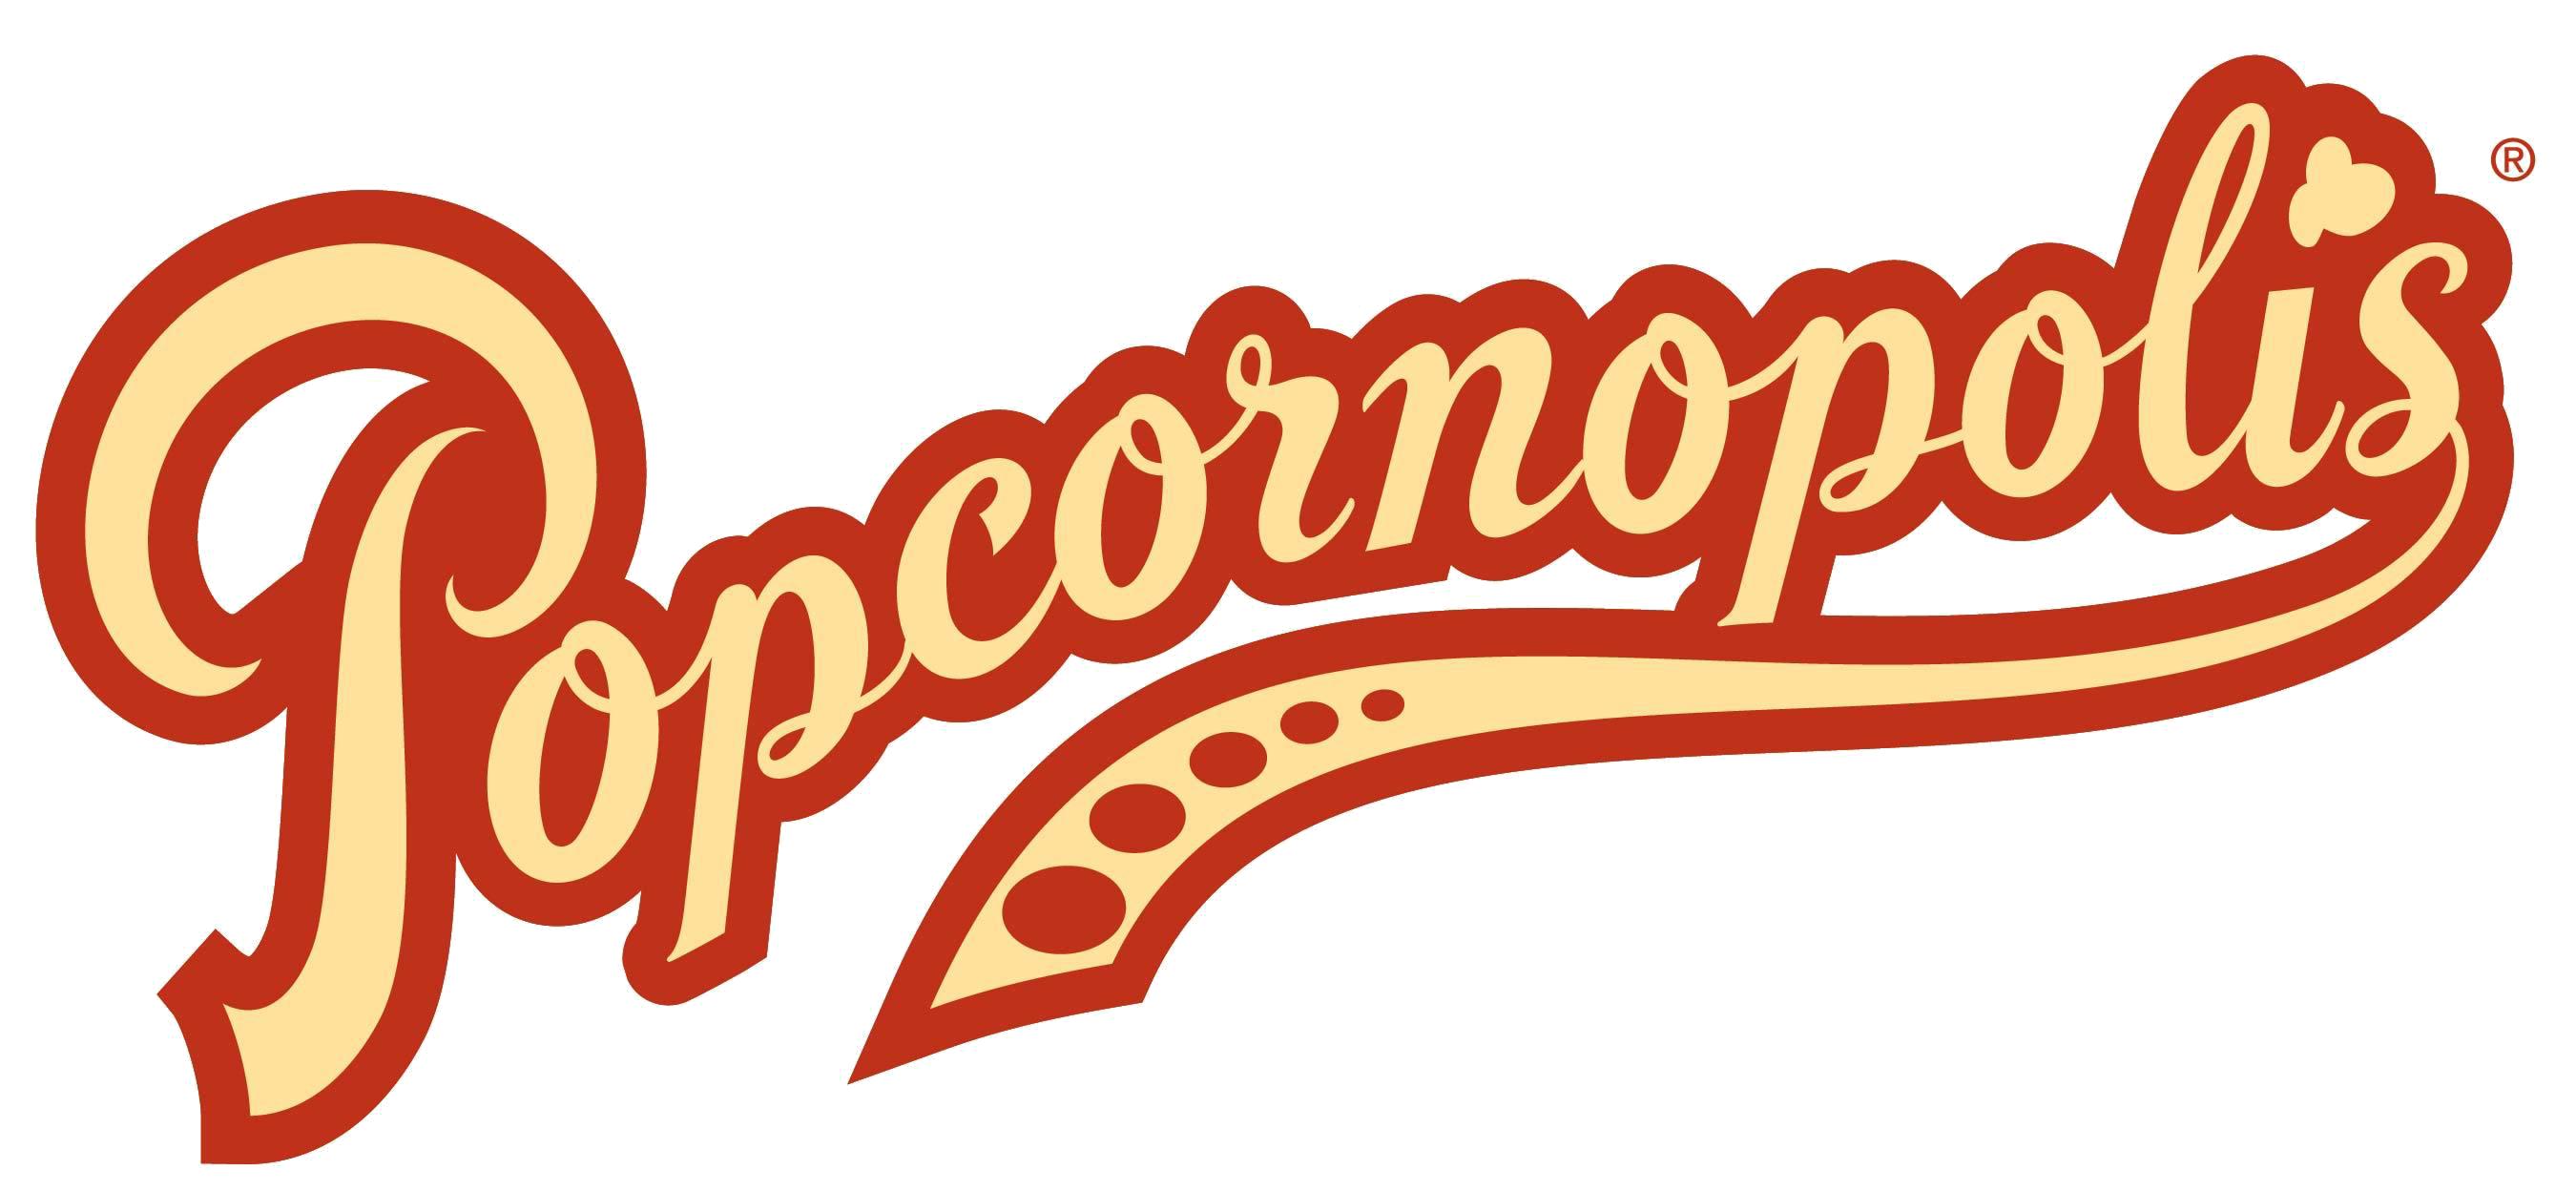 popcornopolis